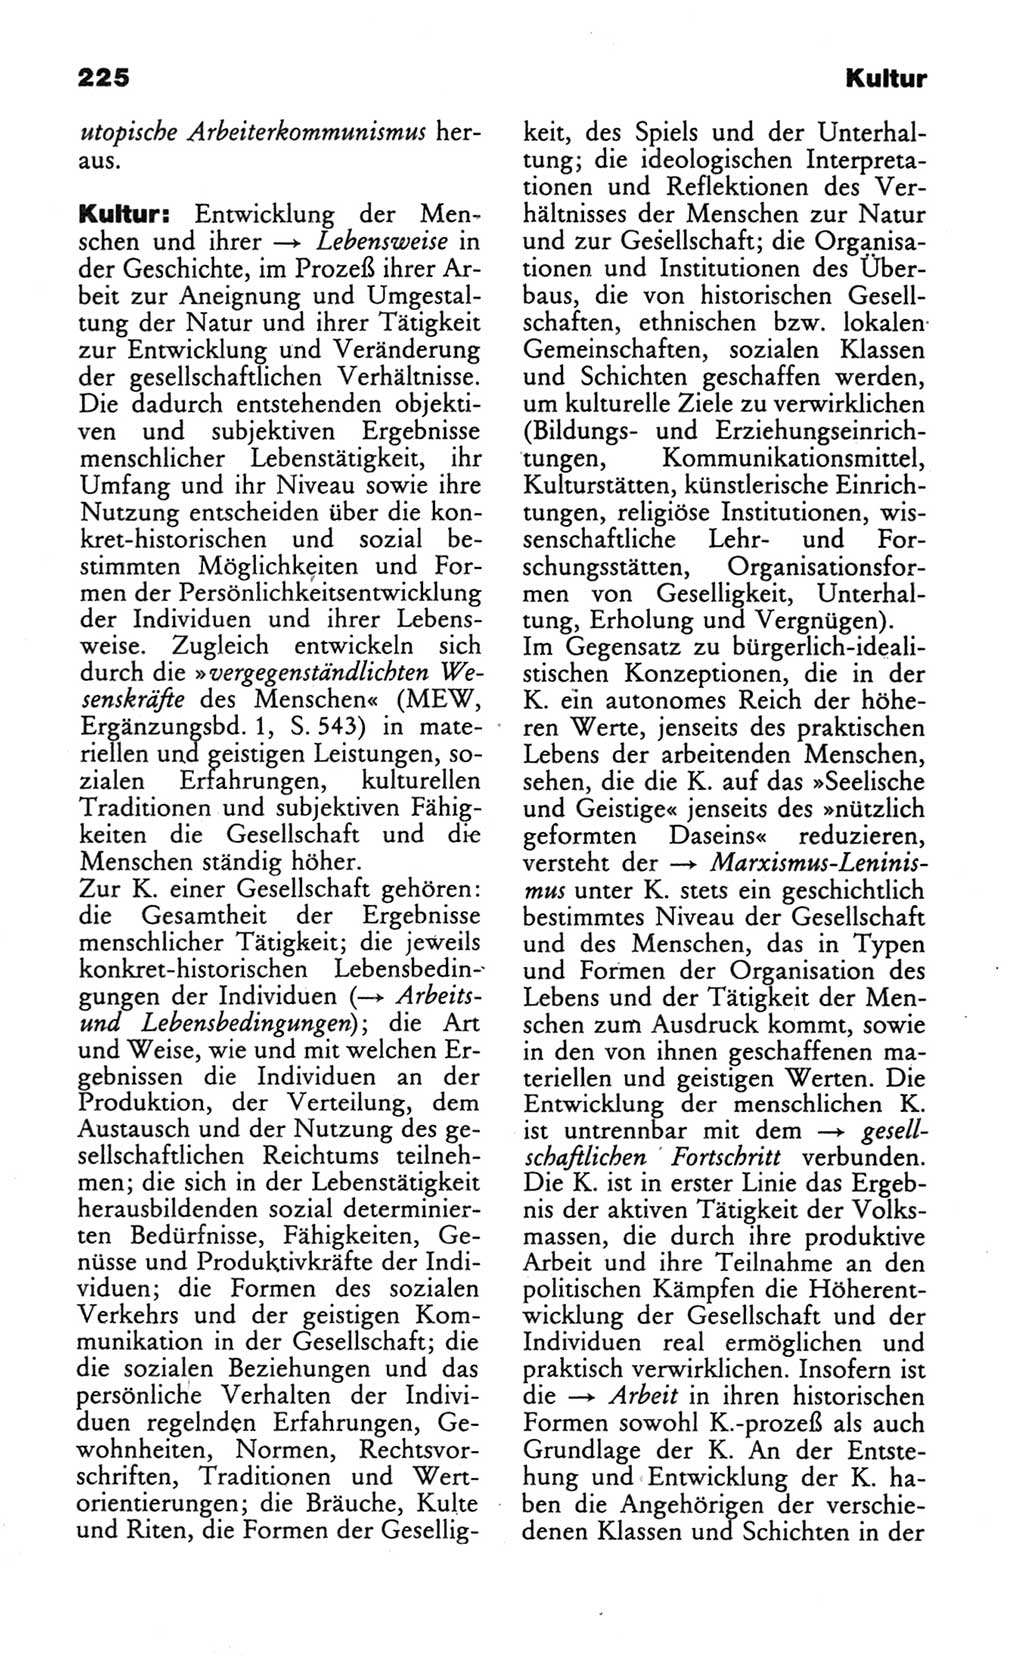 Wörterbuch des wissenschaftlichen Kommunismus [Deutsche Demokratische Republik (DDR)] 1986, Seite 225 (Wb. wiss. Komm. DDR 1986, S. 225)